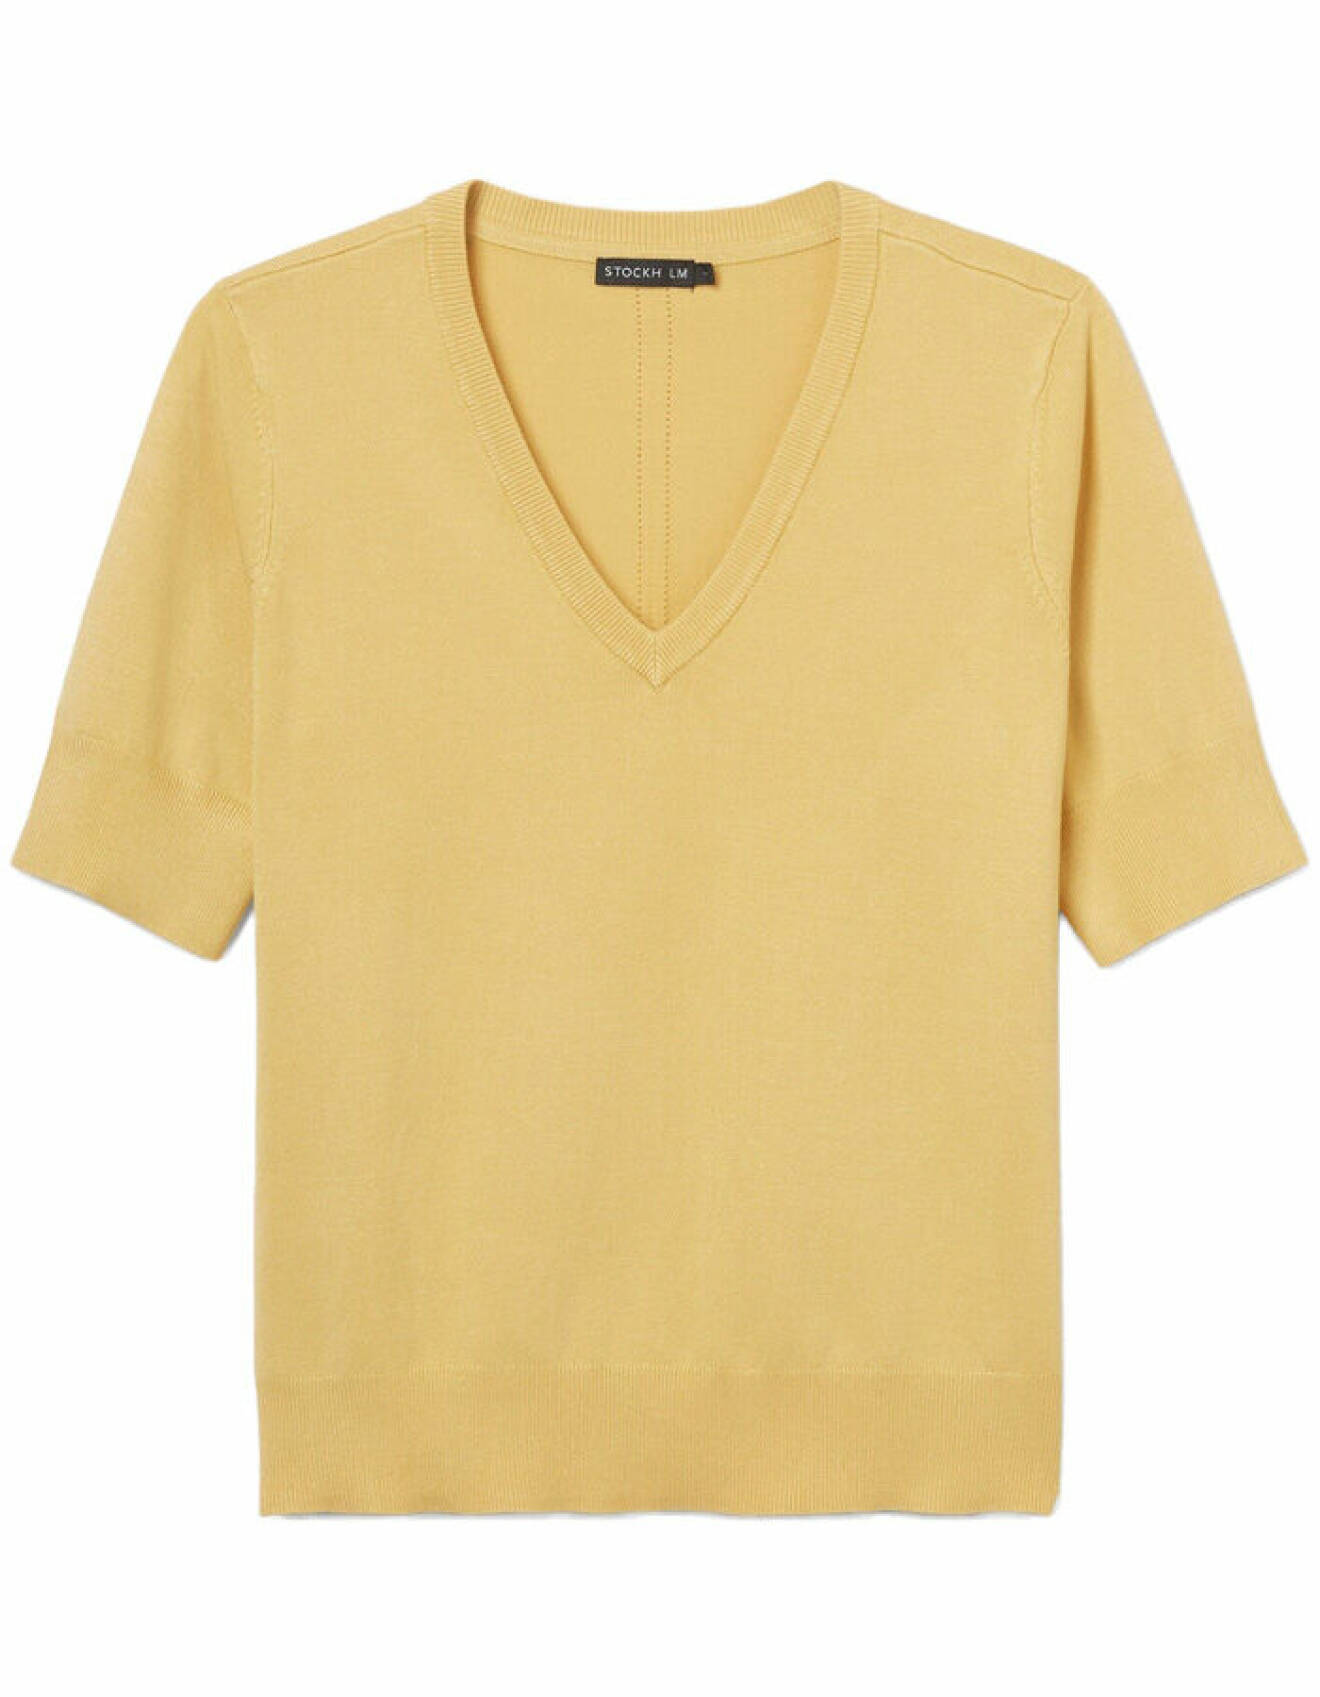 gul stickad tröja med kort ärm för dam från stockh lm